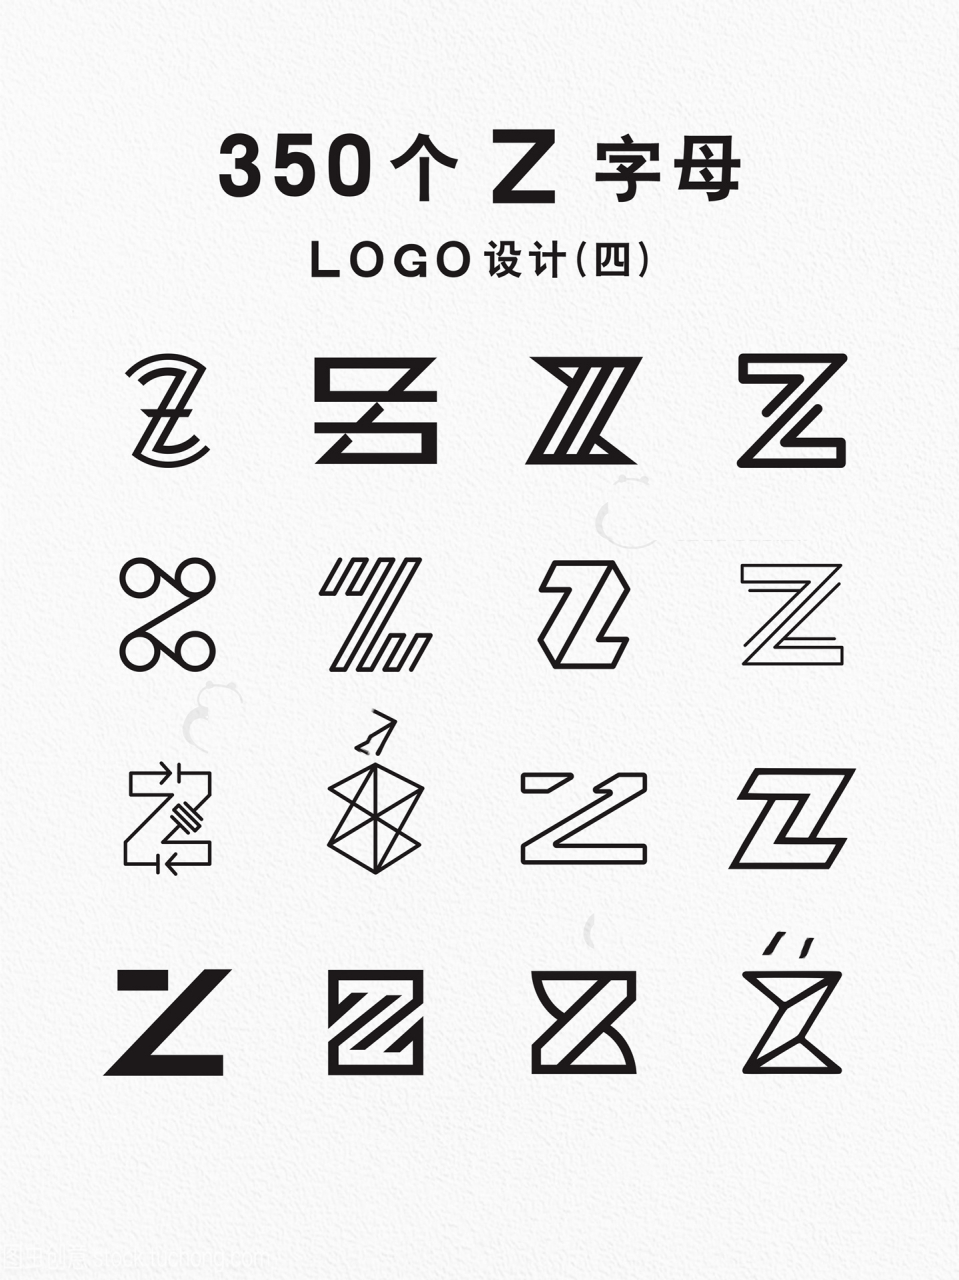 350个字母z的创意logo设计(四) 英文字母z的logo设计大合集, 也是我做